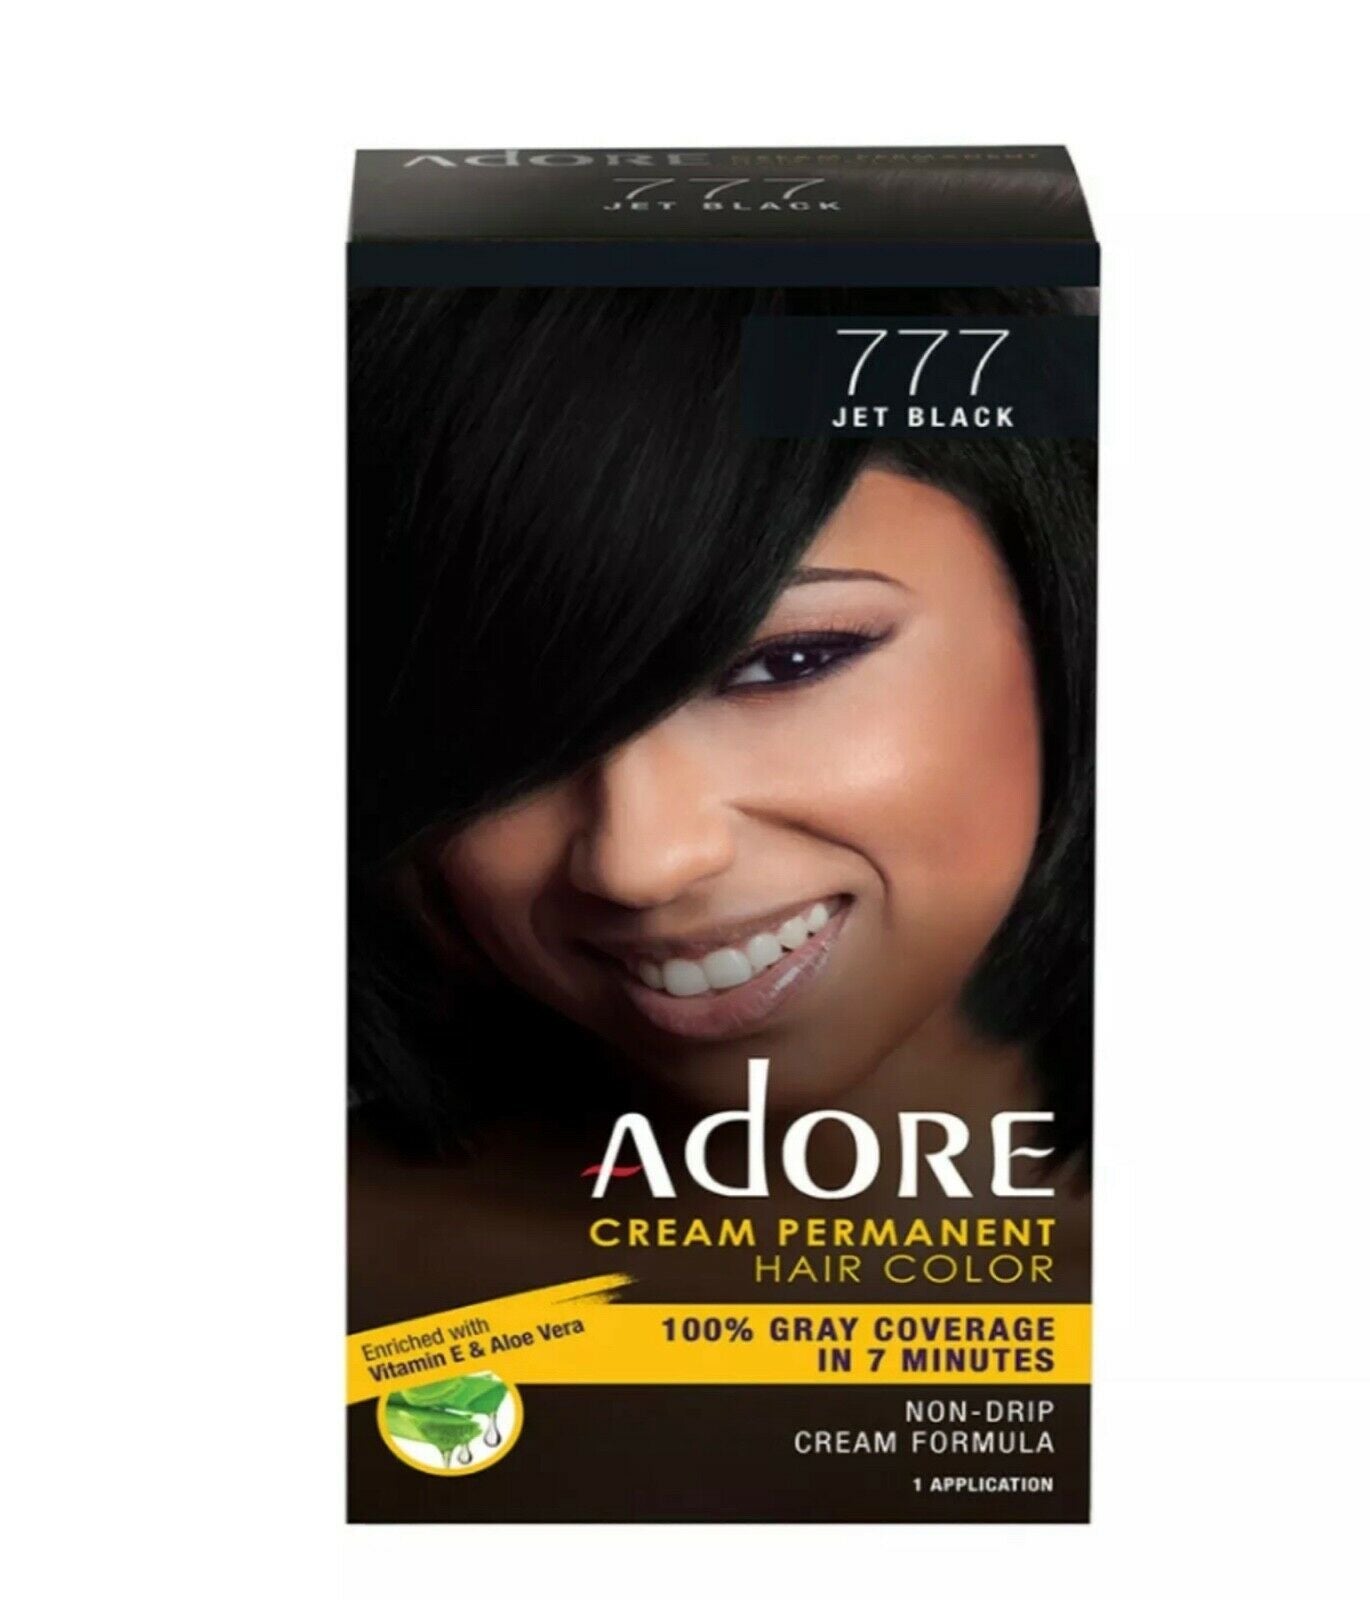 Adore Cream Permanent Hair Color 100% Gray Coverage In 7 Minutes Vitamin & Aloe